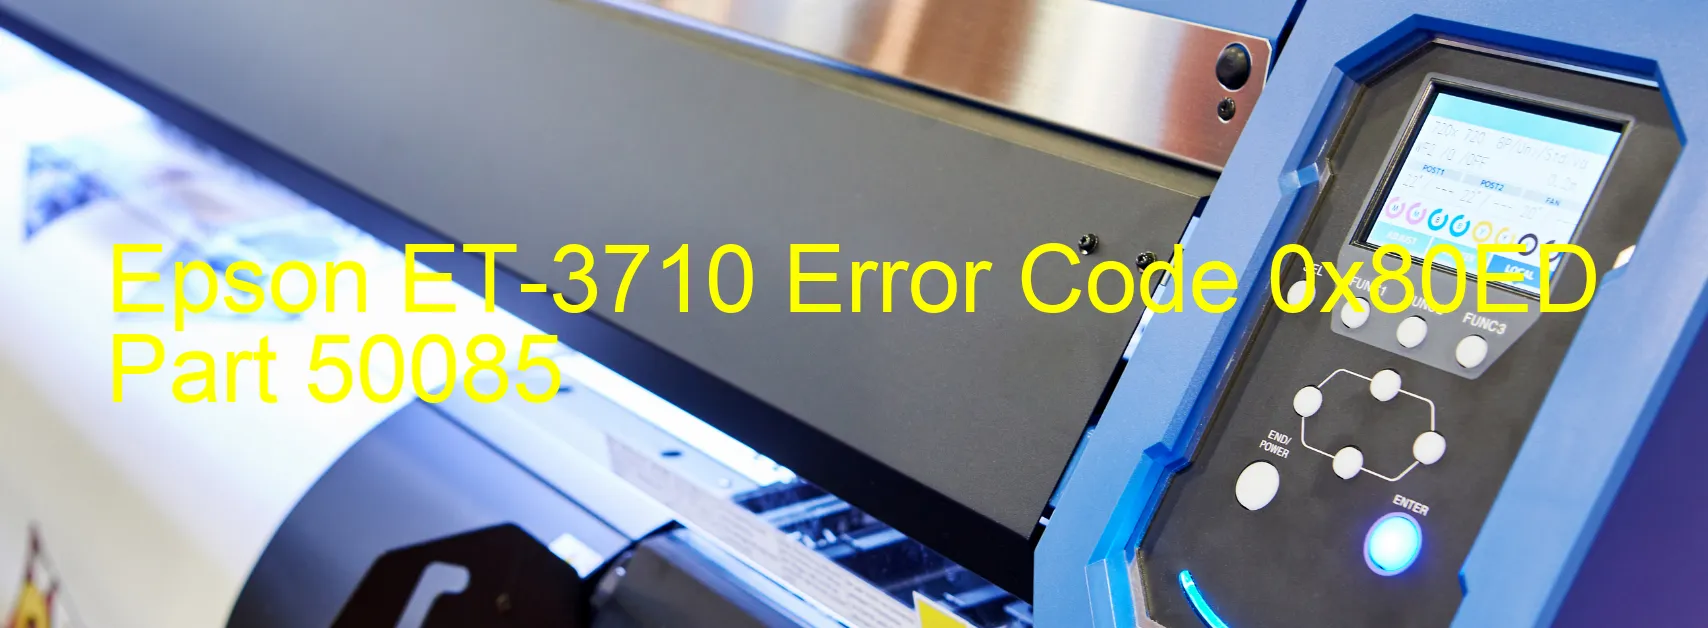 Epson ET-3710 Error Code 0x80ED Part 50085